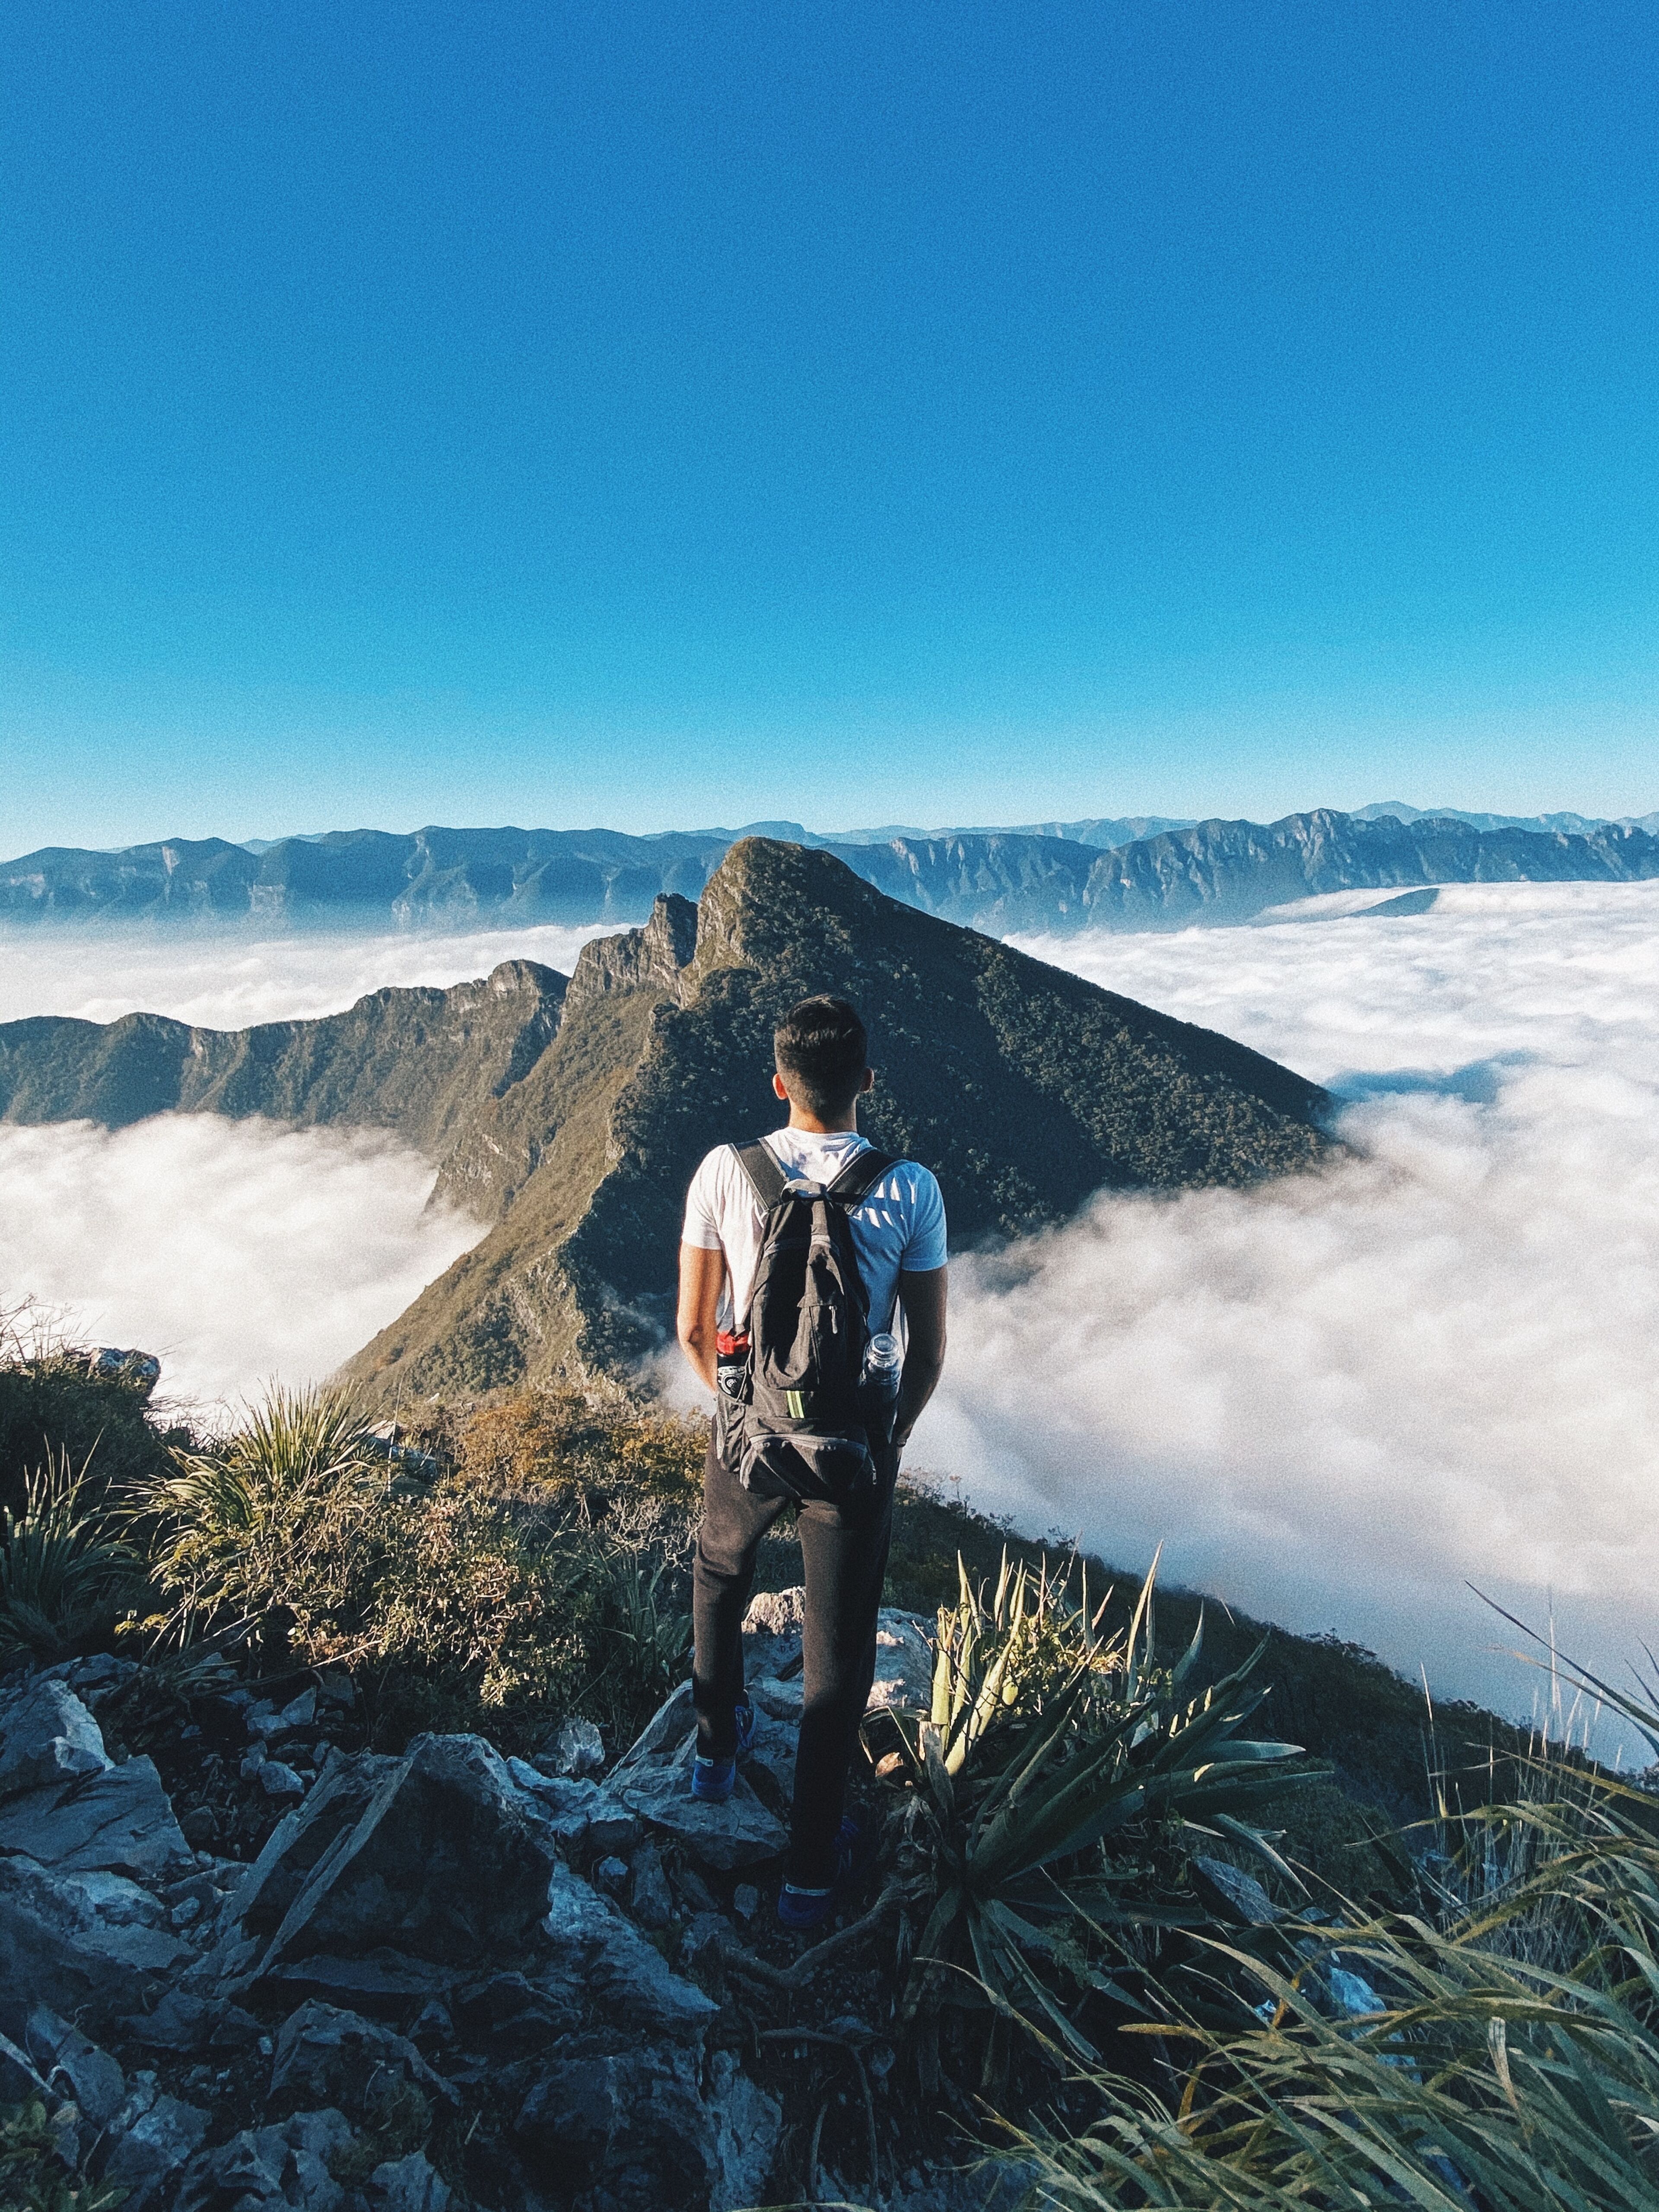  Un randonneur solitaire se tient au sommet d'un pic escarpé, contemplant une mer de nuages enveloppant les montagnes lointaines sous un ciel bleu limpide.

